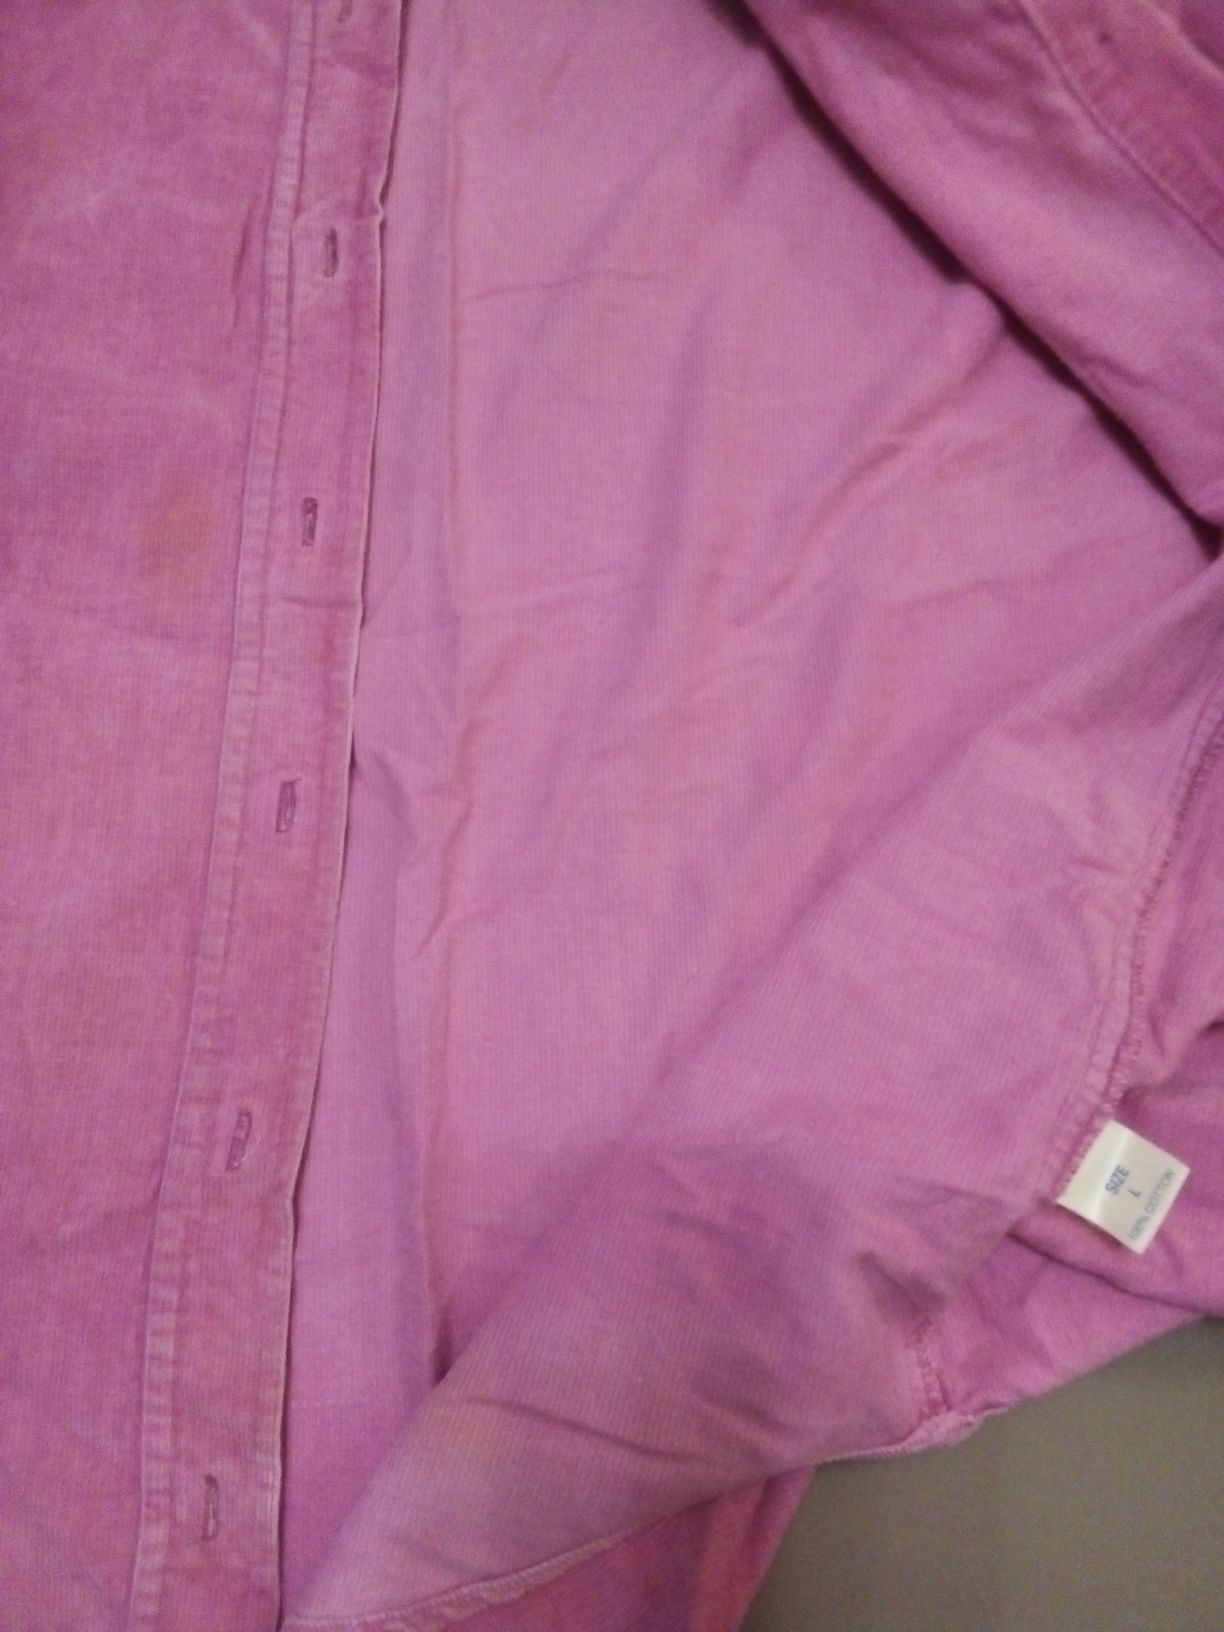 Микро вельветовая женская рубашка размер48